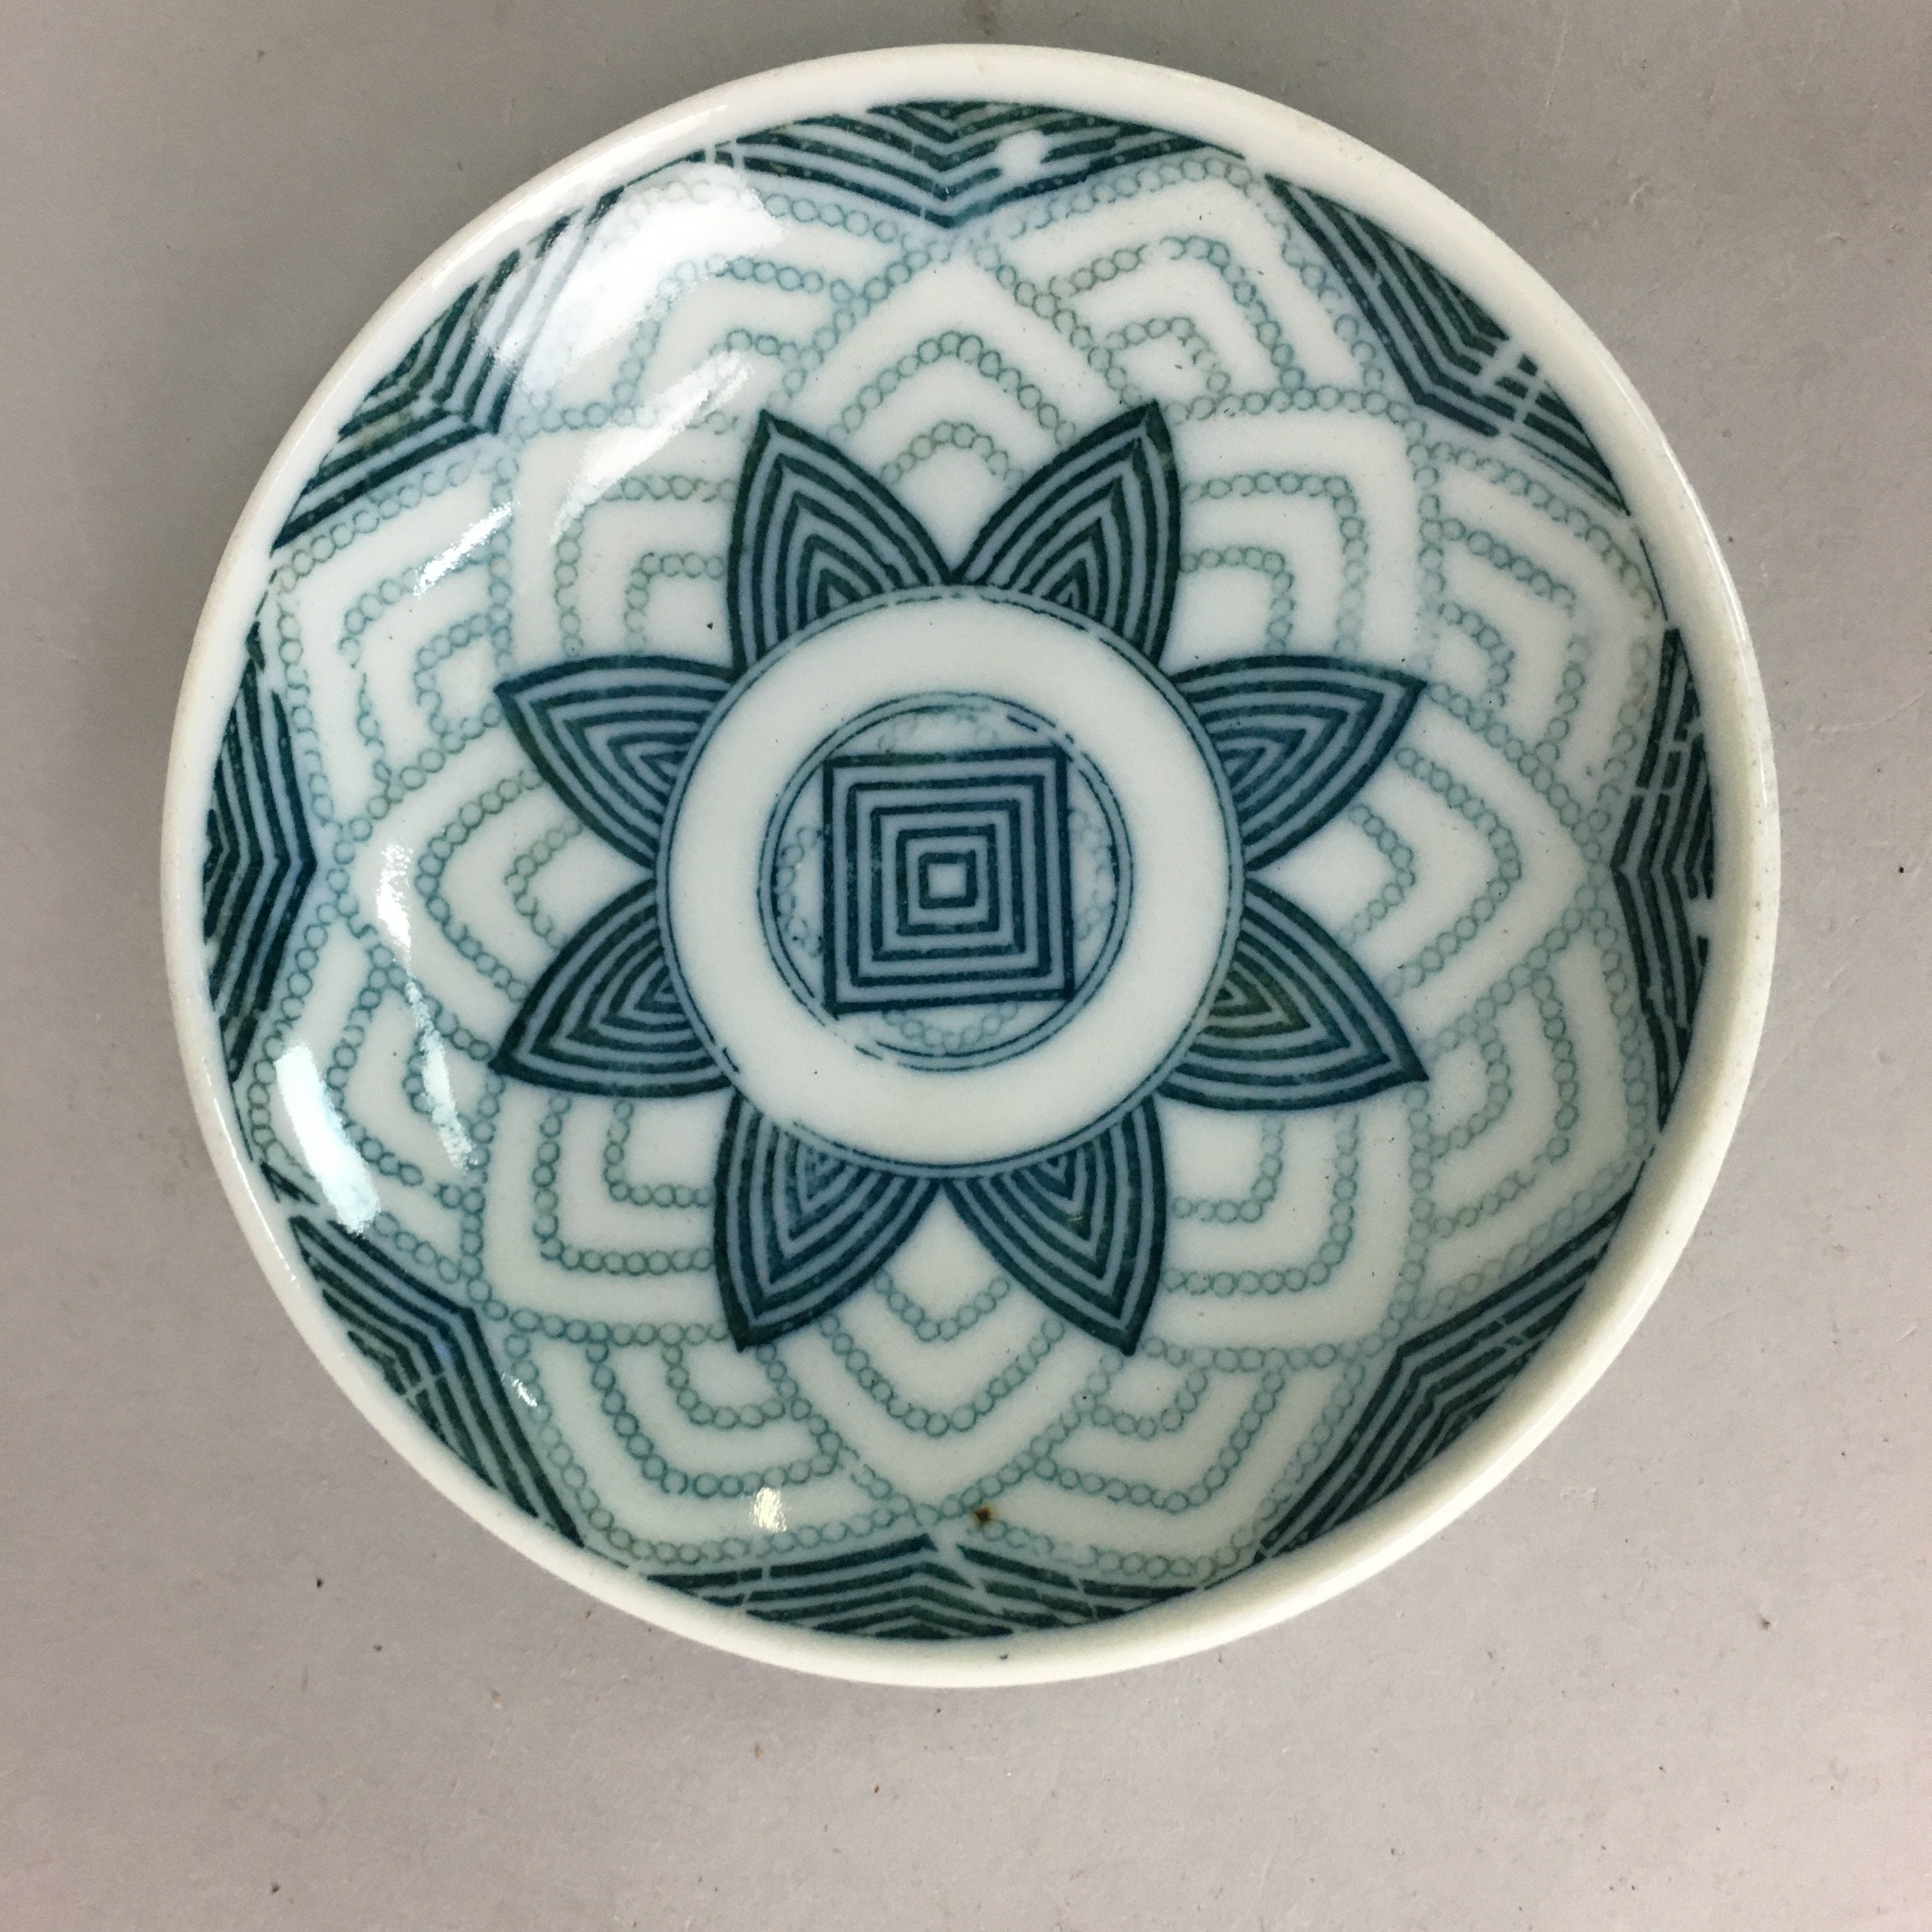 Japanese Porcelain Small Plate Vtg Kozara Floral Petal Green White PP108